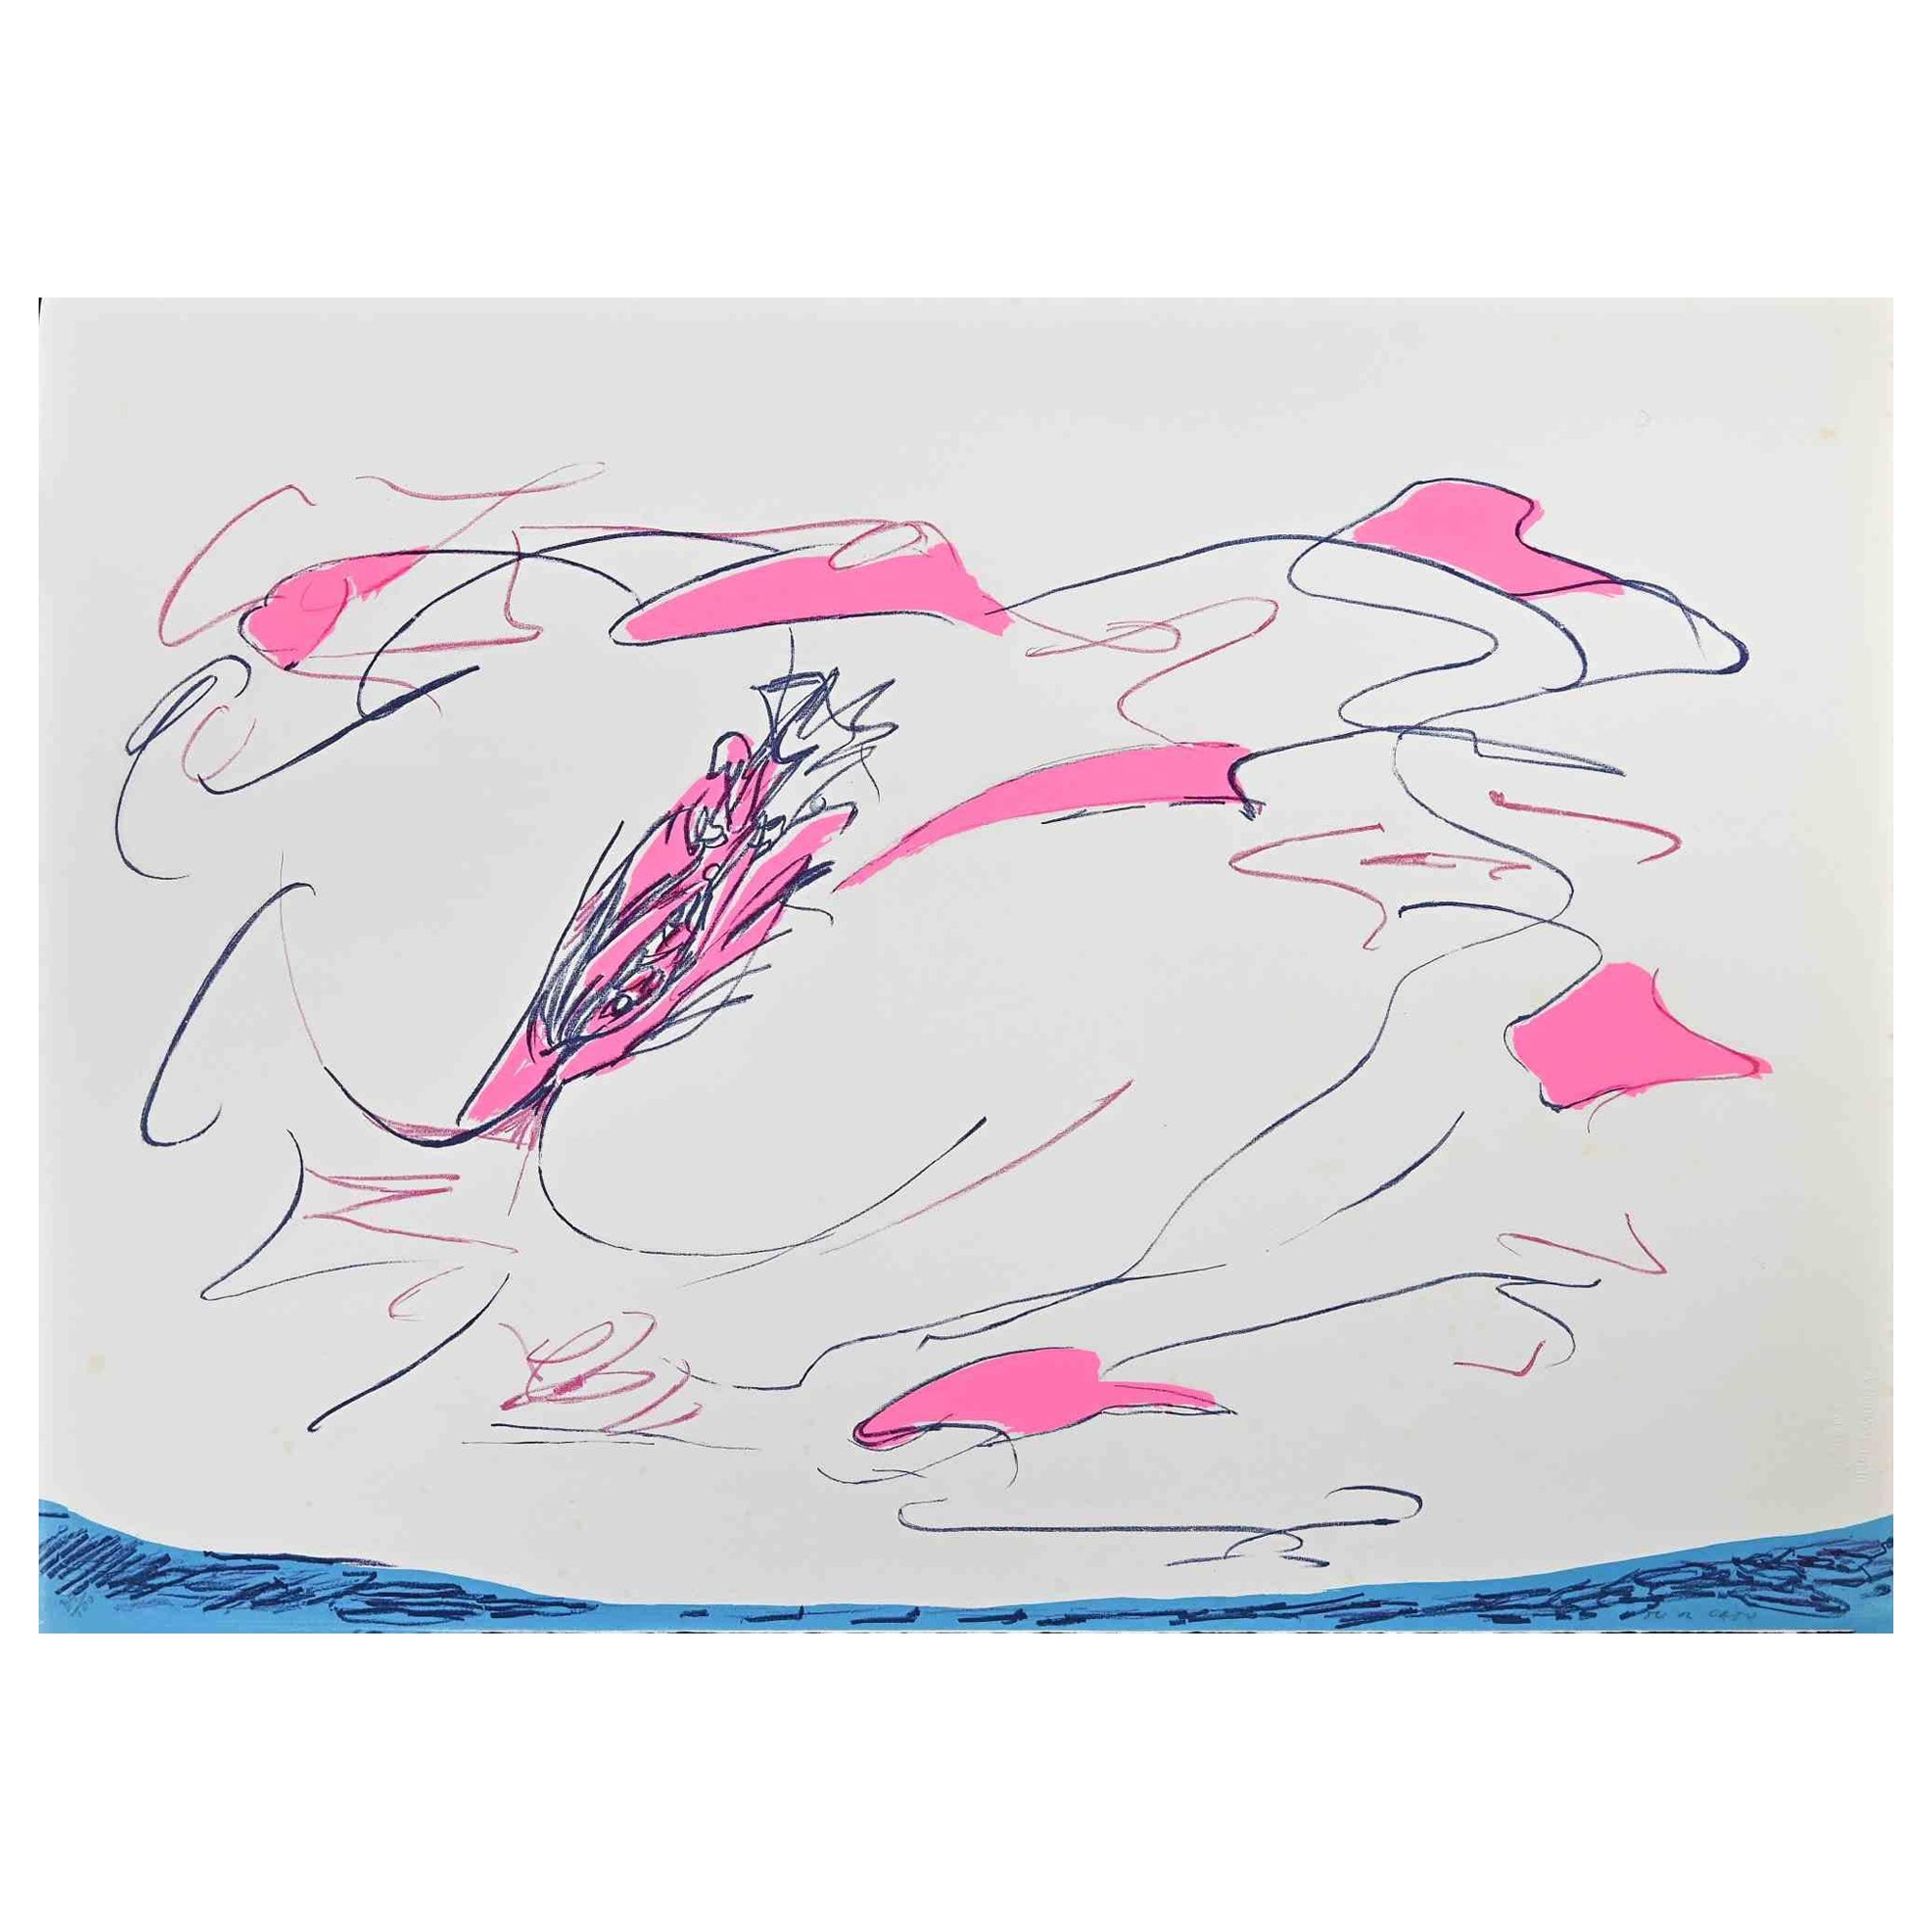 Rose abstrait  Composition est une sérigraphie colorée réalisée par l'artiste contemporain Giulio Turcato en 1973.

Signé à la main au crayon en bas à droite.

Numéroté dans la marge inférieure gauche, édition 85/100.

Label d'authenticité de La